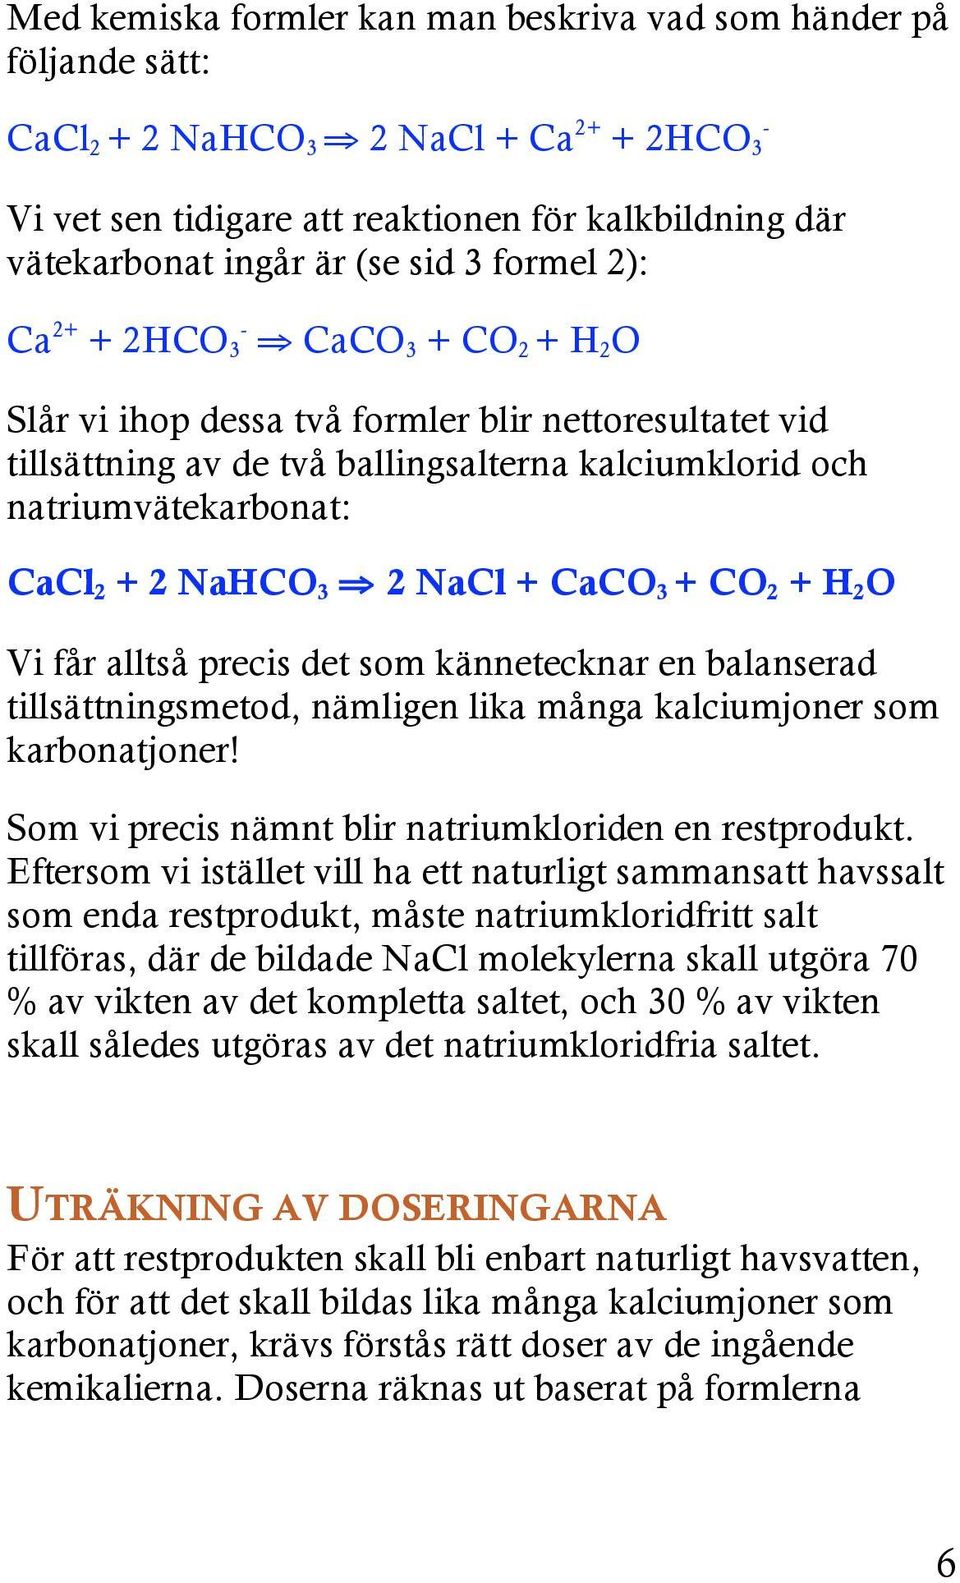 2 NaHCO 3 2 NaCl + CaCO 3 + CO 2 + H 2 O Vi får alltså precis det som kännetecknar en balanserad tillsättningsmetod, nämligen lika många kalciumjoner som karbonatjoner!